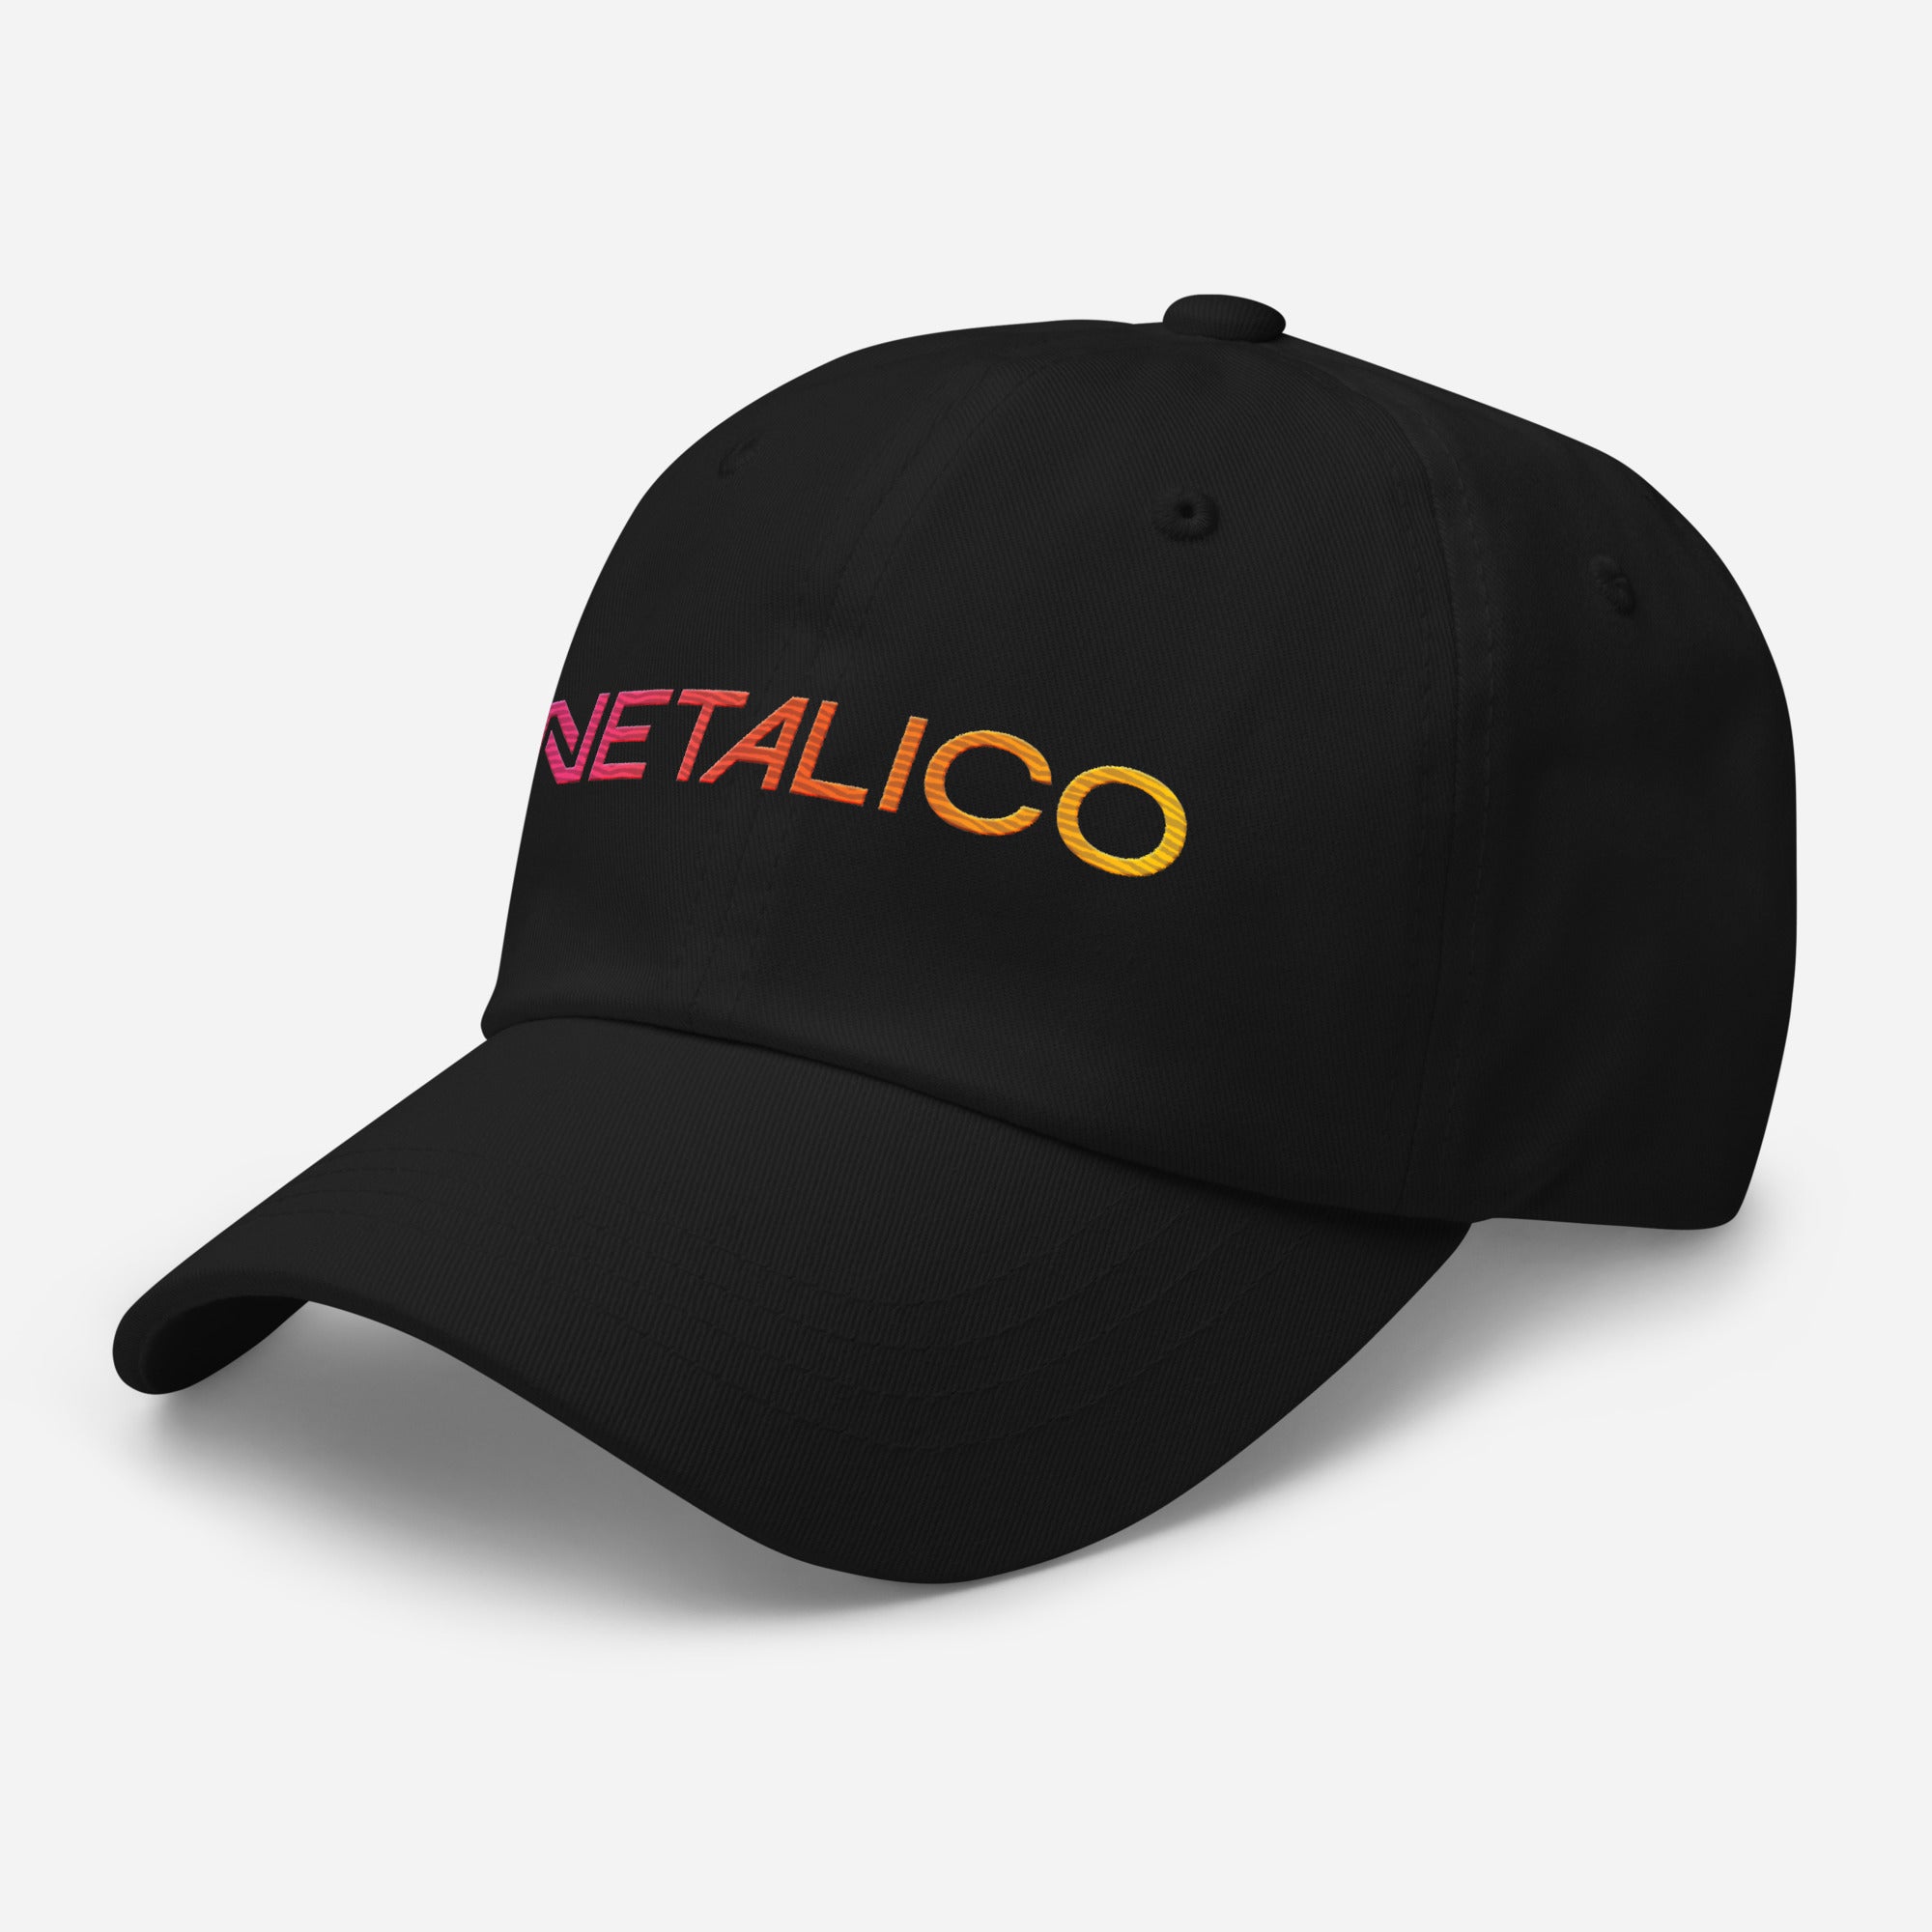 Netalico Creative Thinking Hat